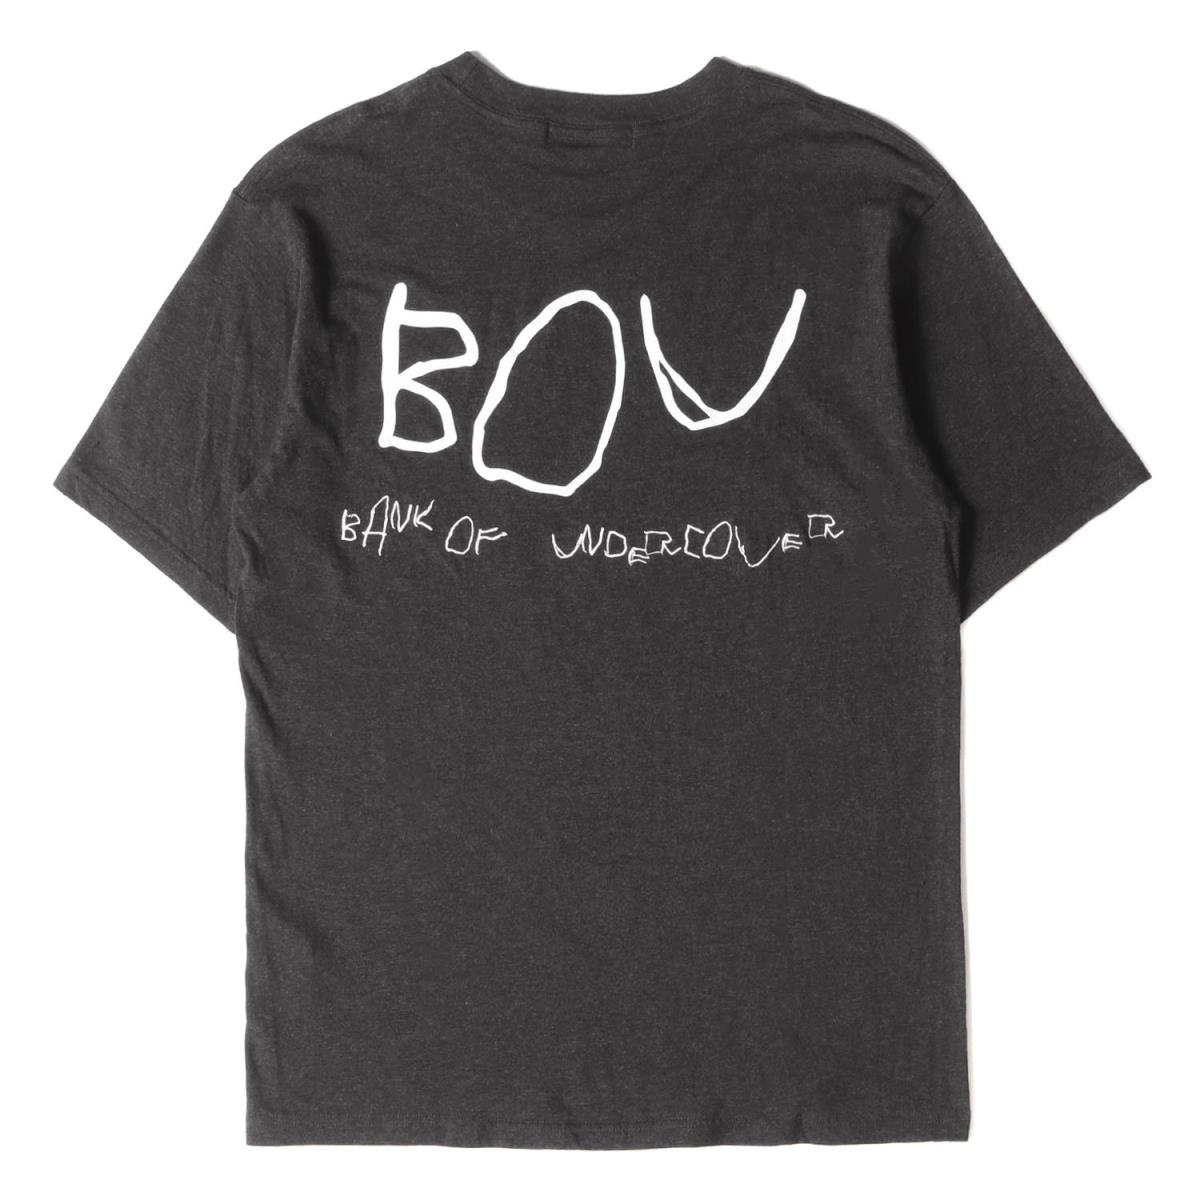 UNDERCOVER アンダーカバー 新品 BOUロゴ クルーネックTシャツ 2020年春夏 Tシャツ 20SS WEB限定カラー ブラック 2 黒 中古 K3099 トップス 美品 半袖 メンズ